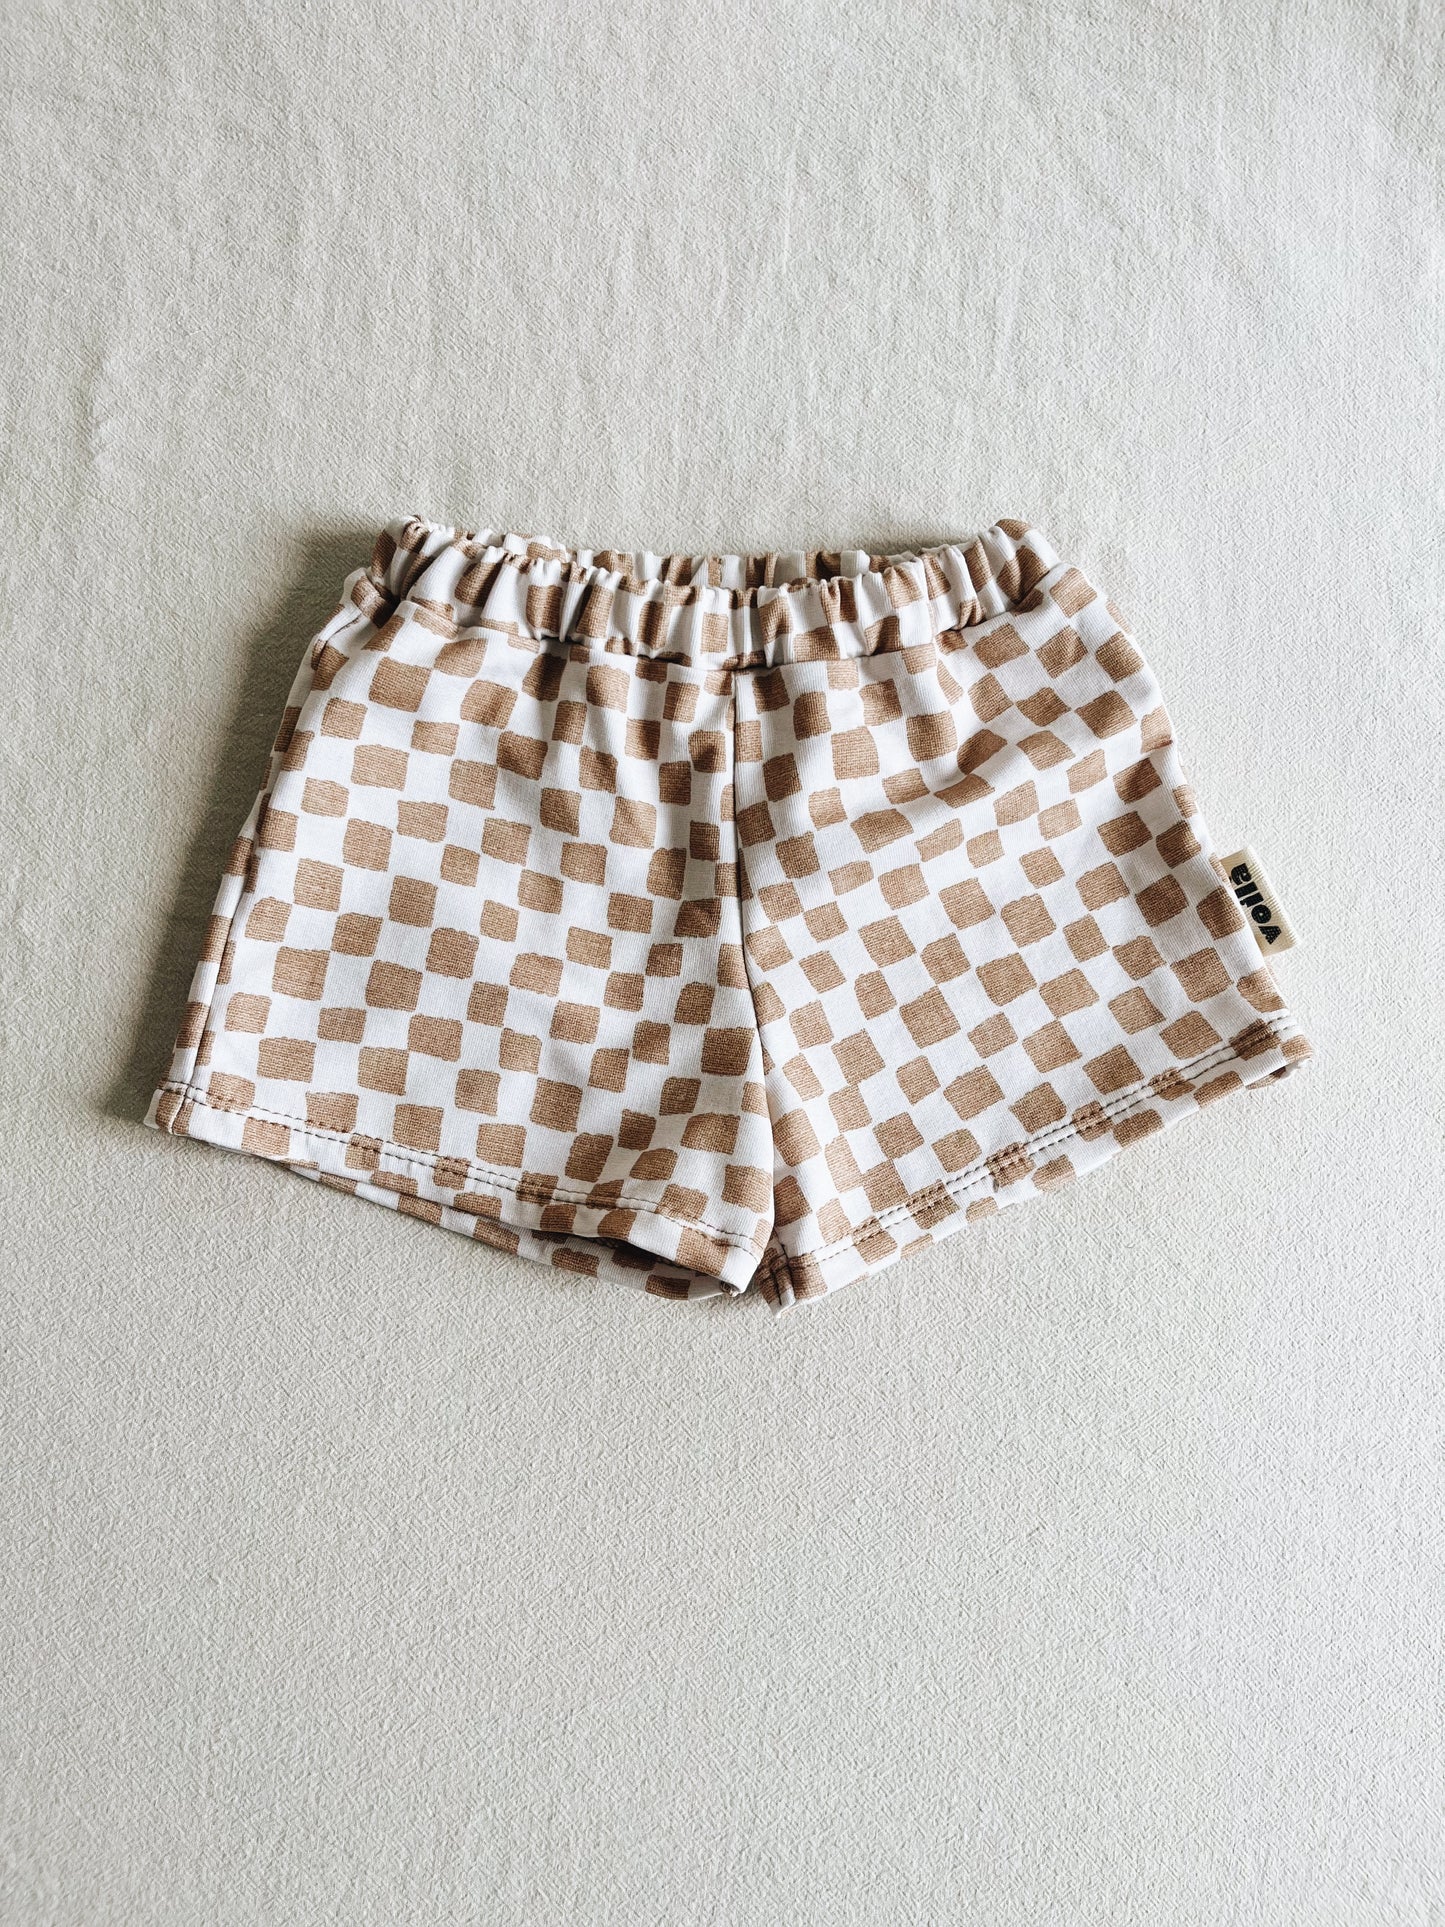 Hazelnut Sponge Shorts